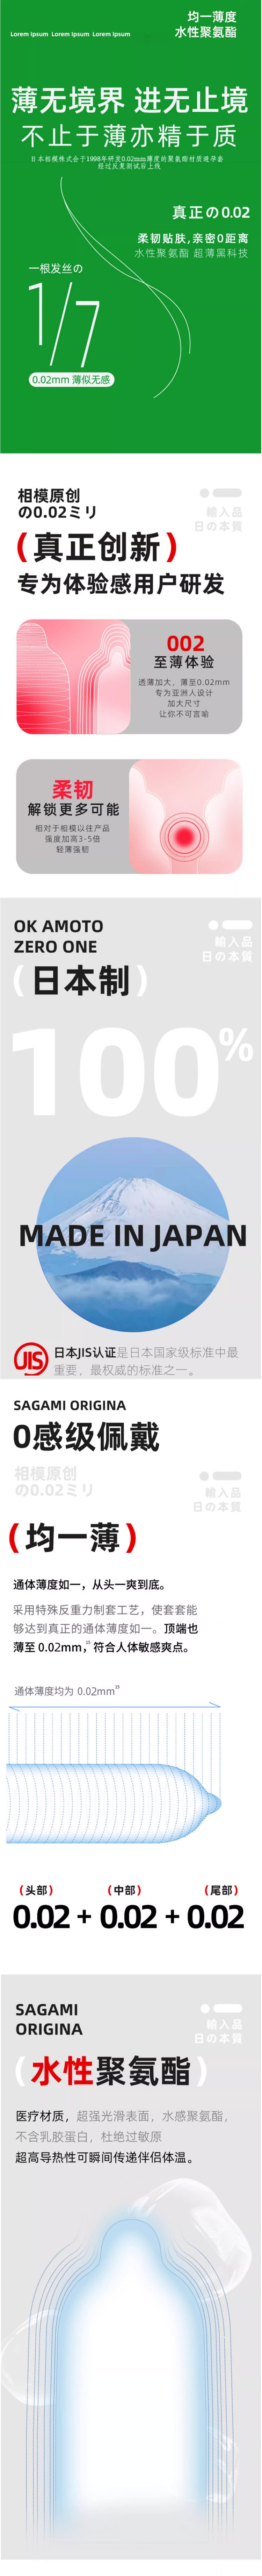 【日本直邮】SAGAMI相模 002大码超薄安全避孕套 10个入【日本版】 成人用品